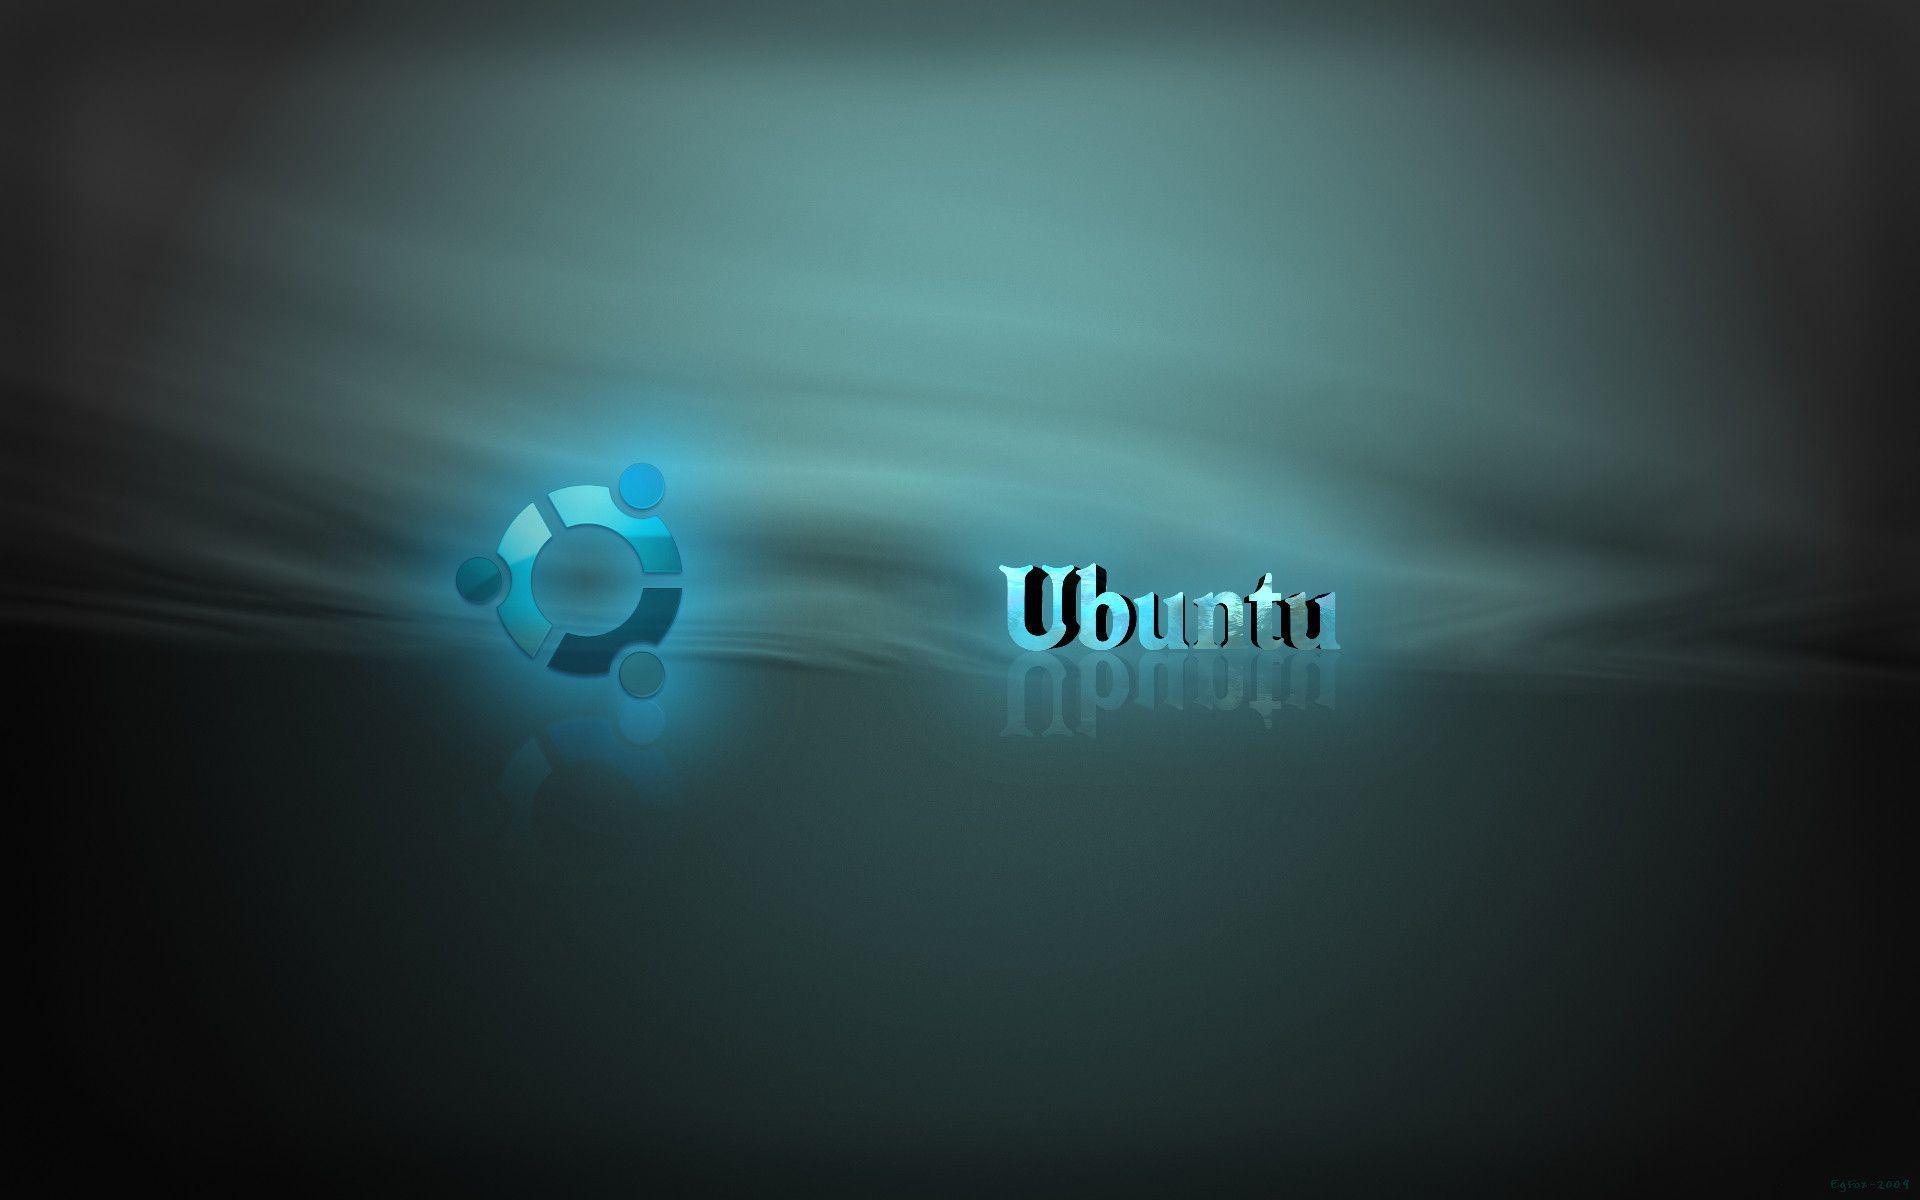 ubuntu vmware image download